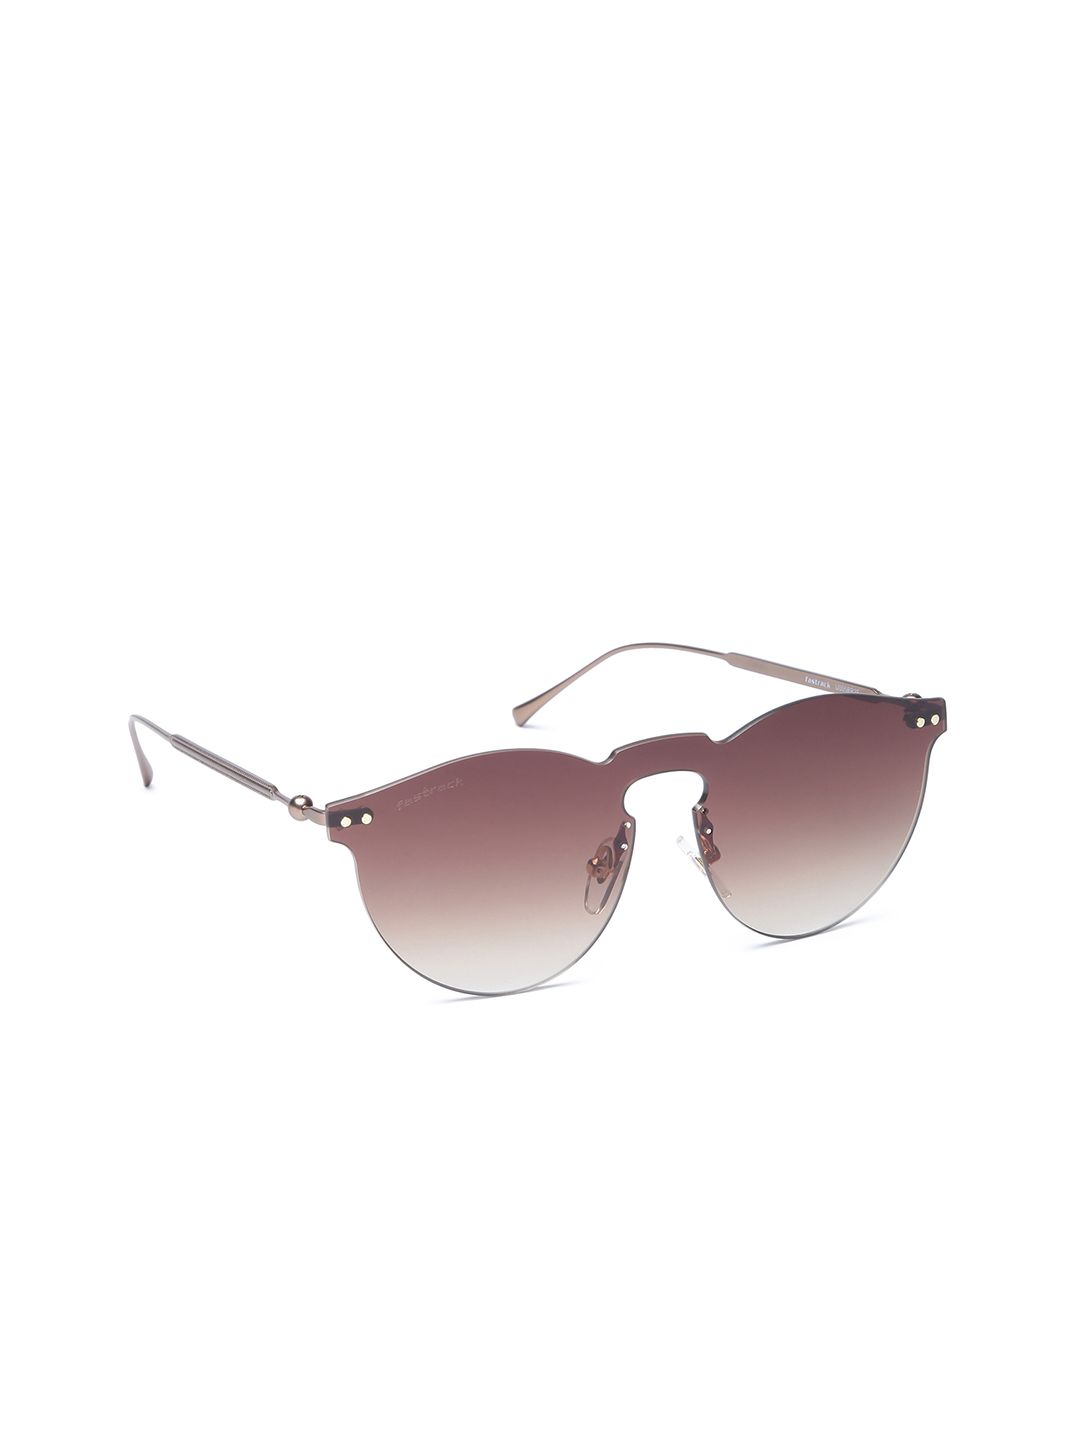 Fastrack Women Round Sunglasses U005BR2F Price in India